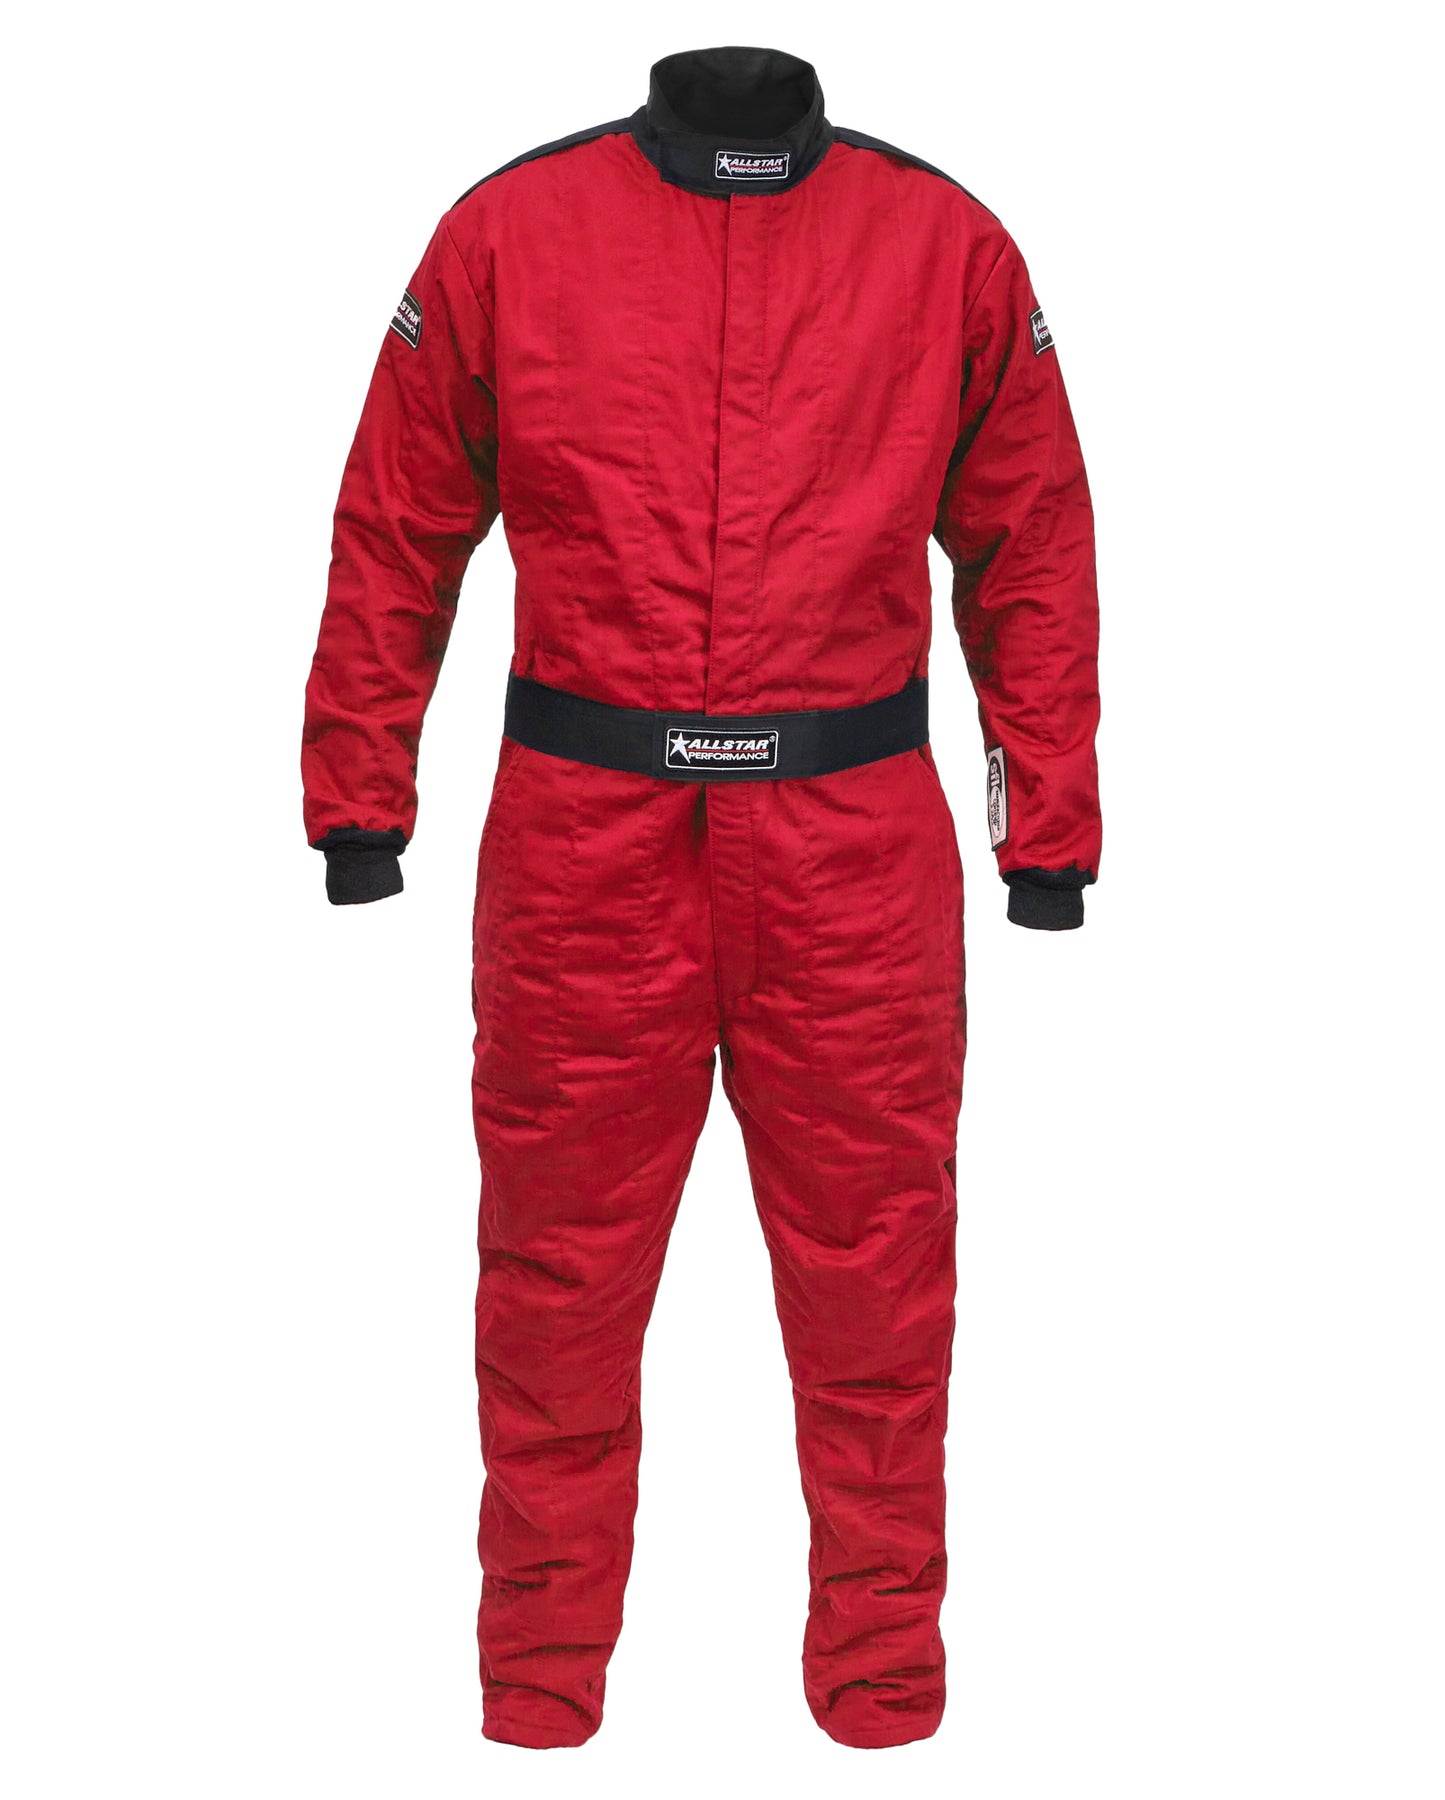 Racing Suit SFI 3.2A/5 M/L Red Medium